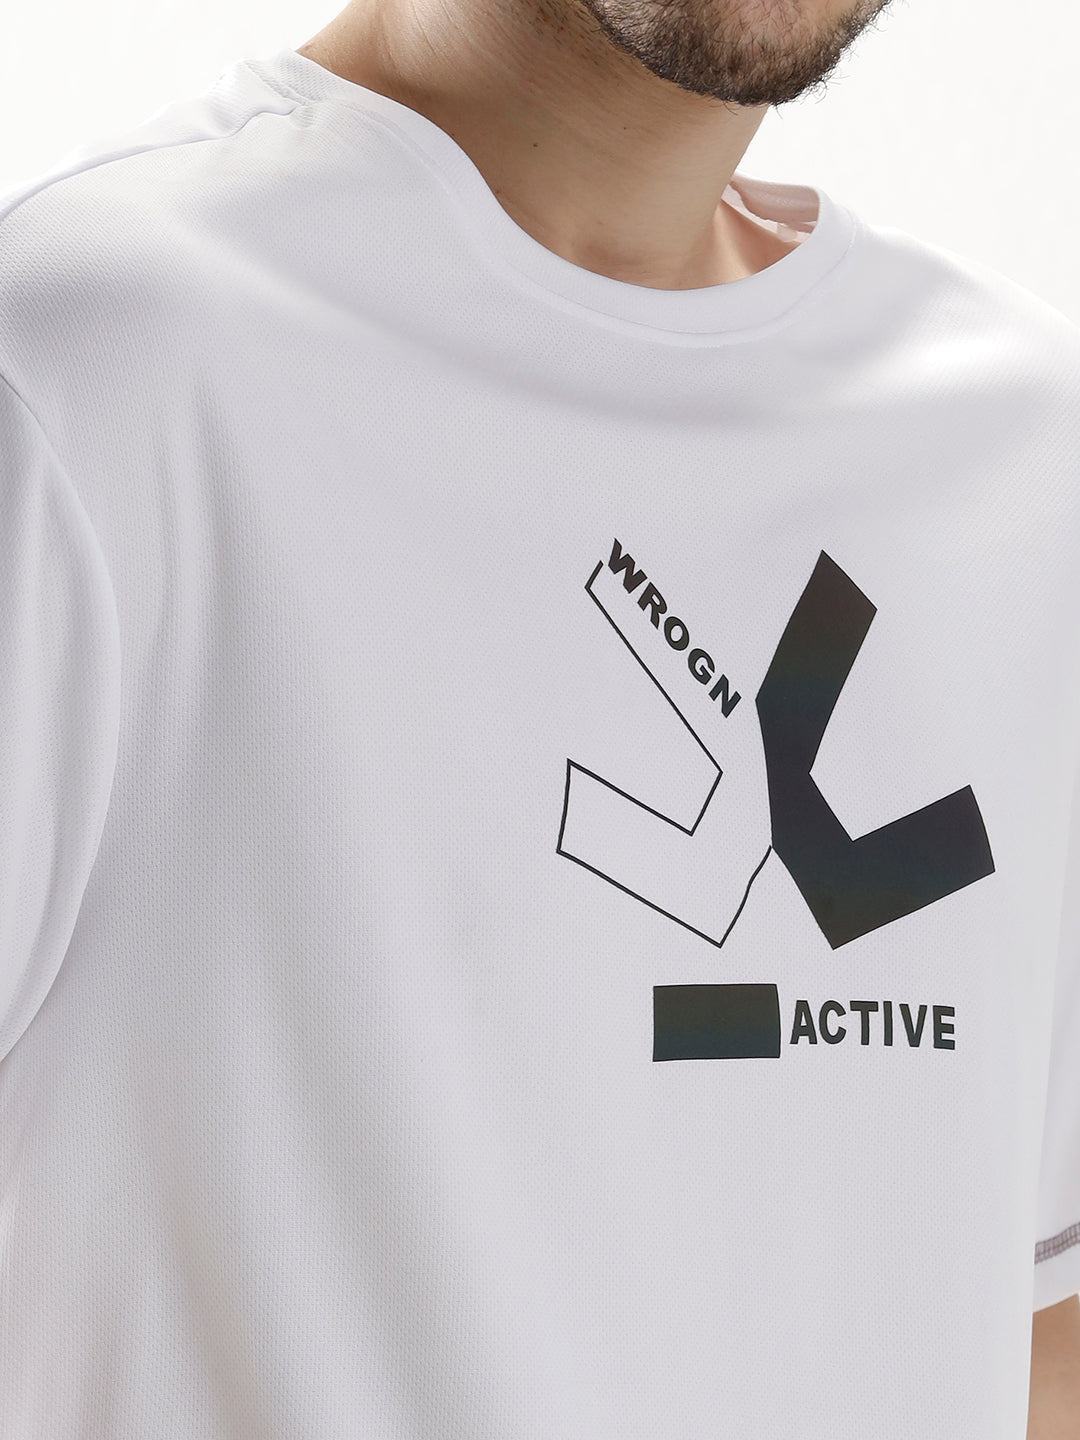 Active Monochrome Print T-Shirt